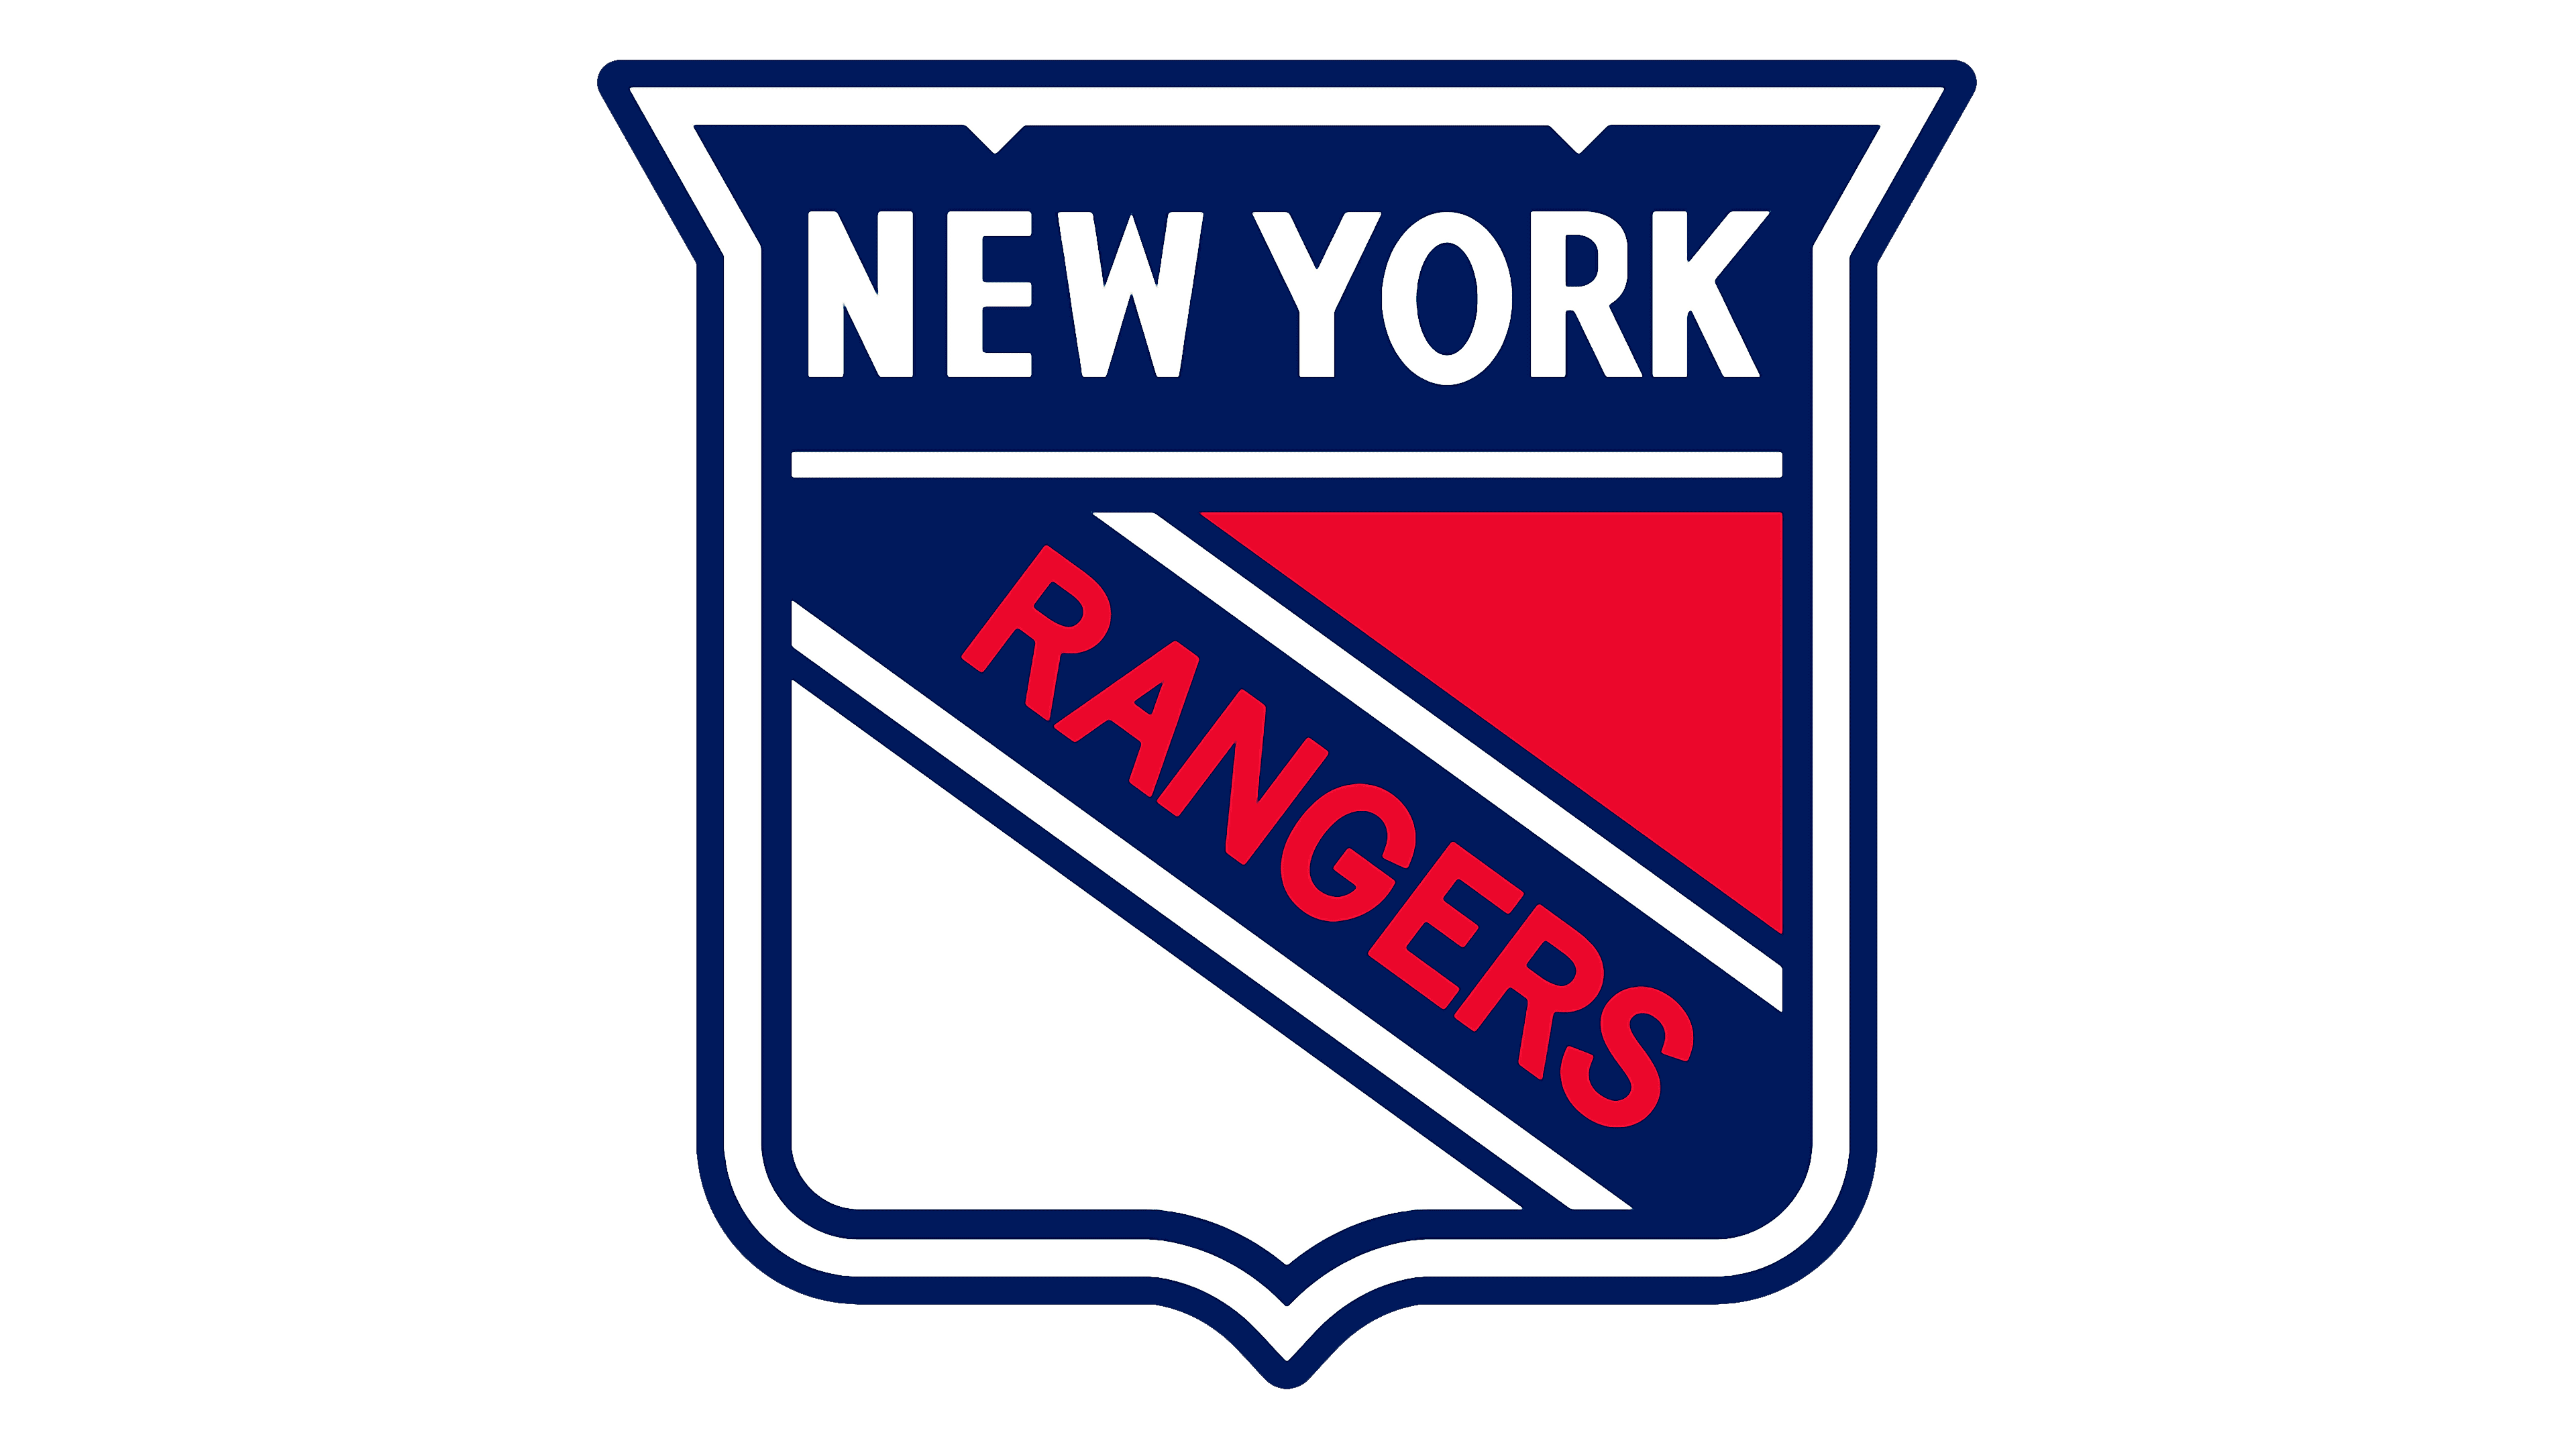 New York Rangers - Wikipedia